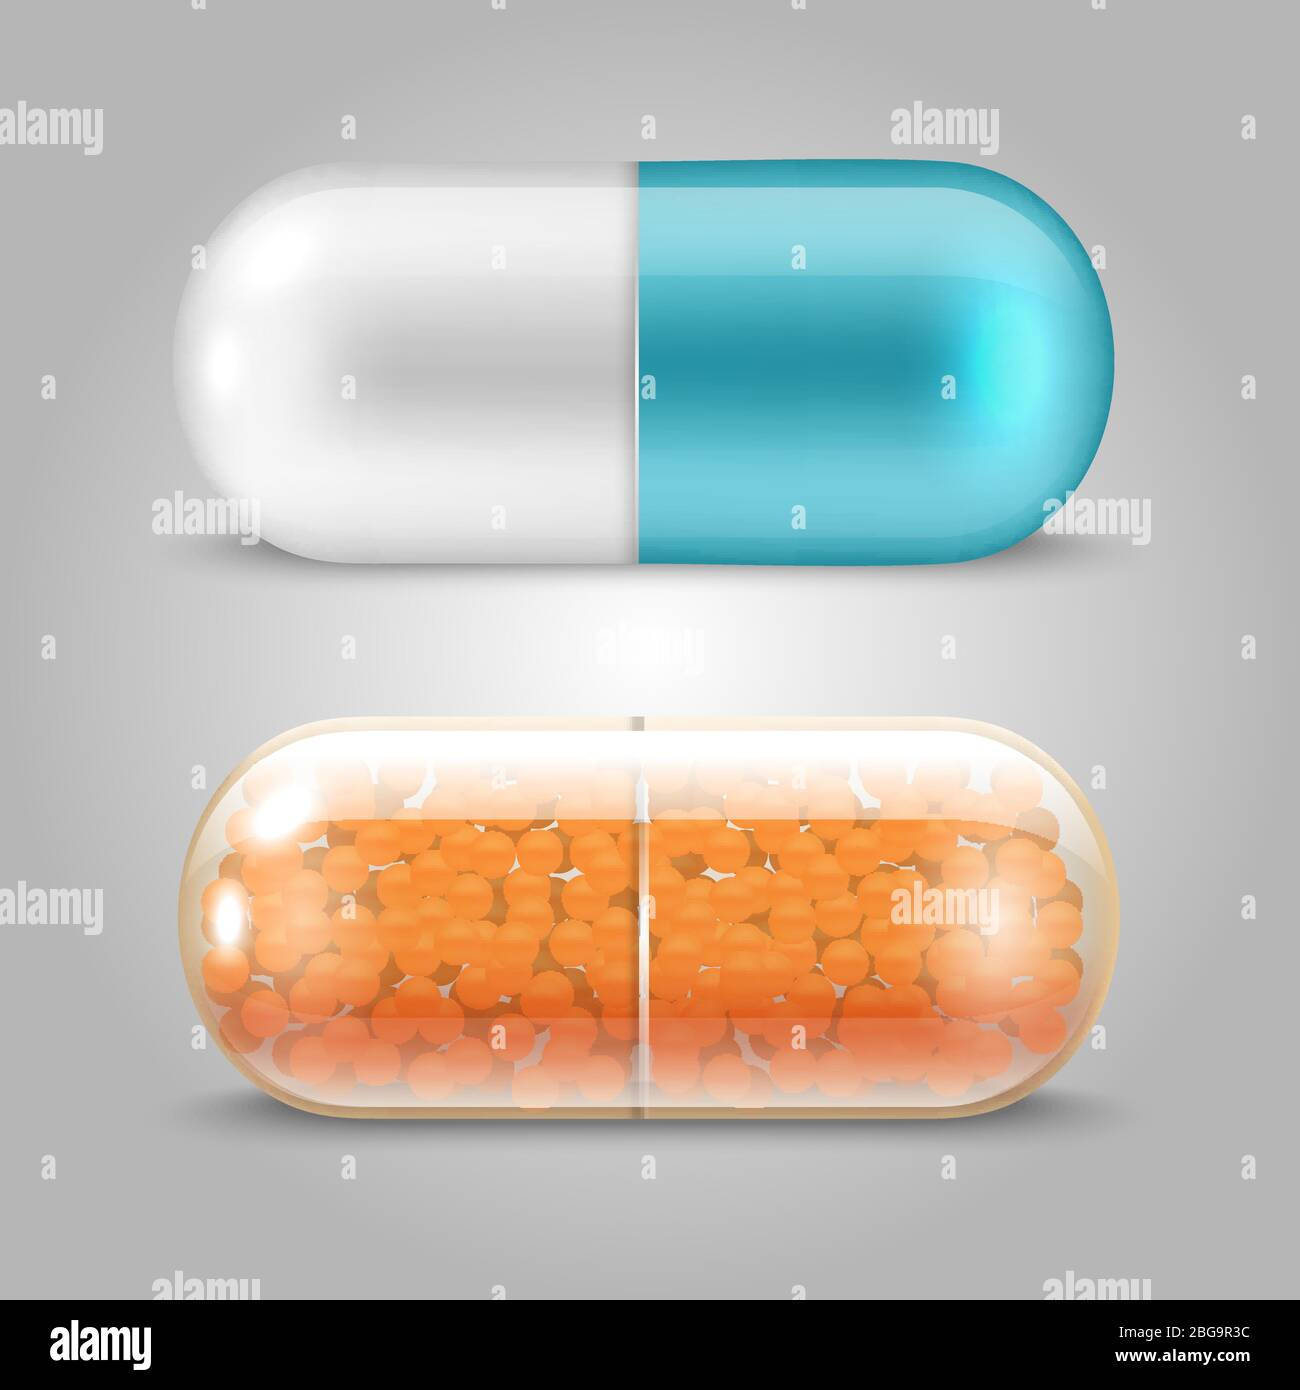 Realistische Pillen Vektor-Design - Medikamente Kapseln Set. Vektorgrafik Stock Vektor